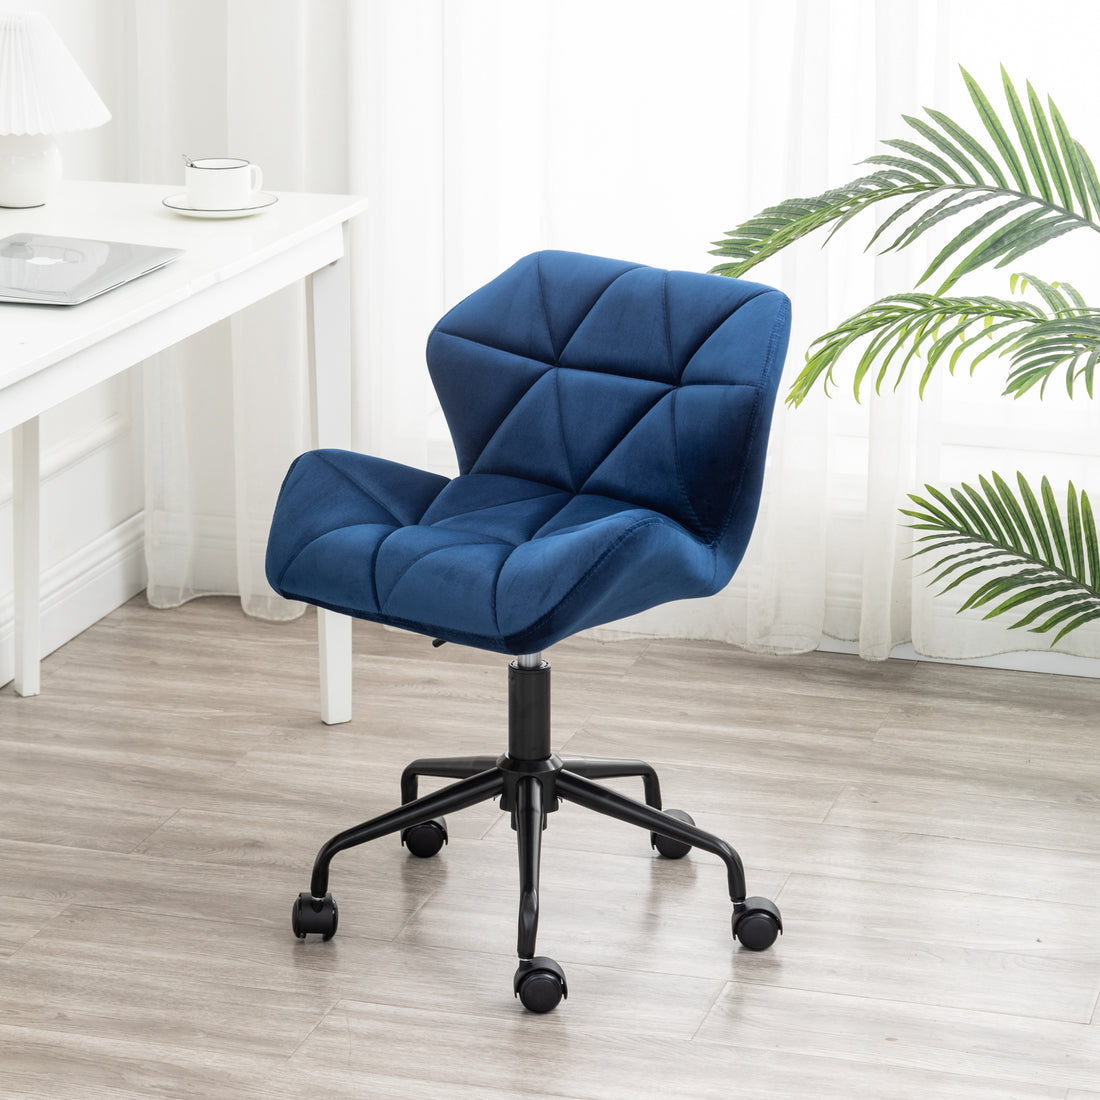 Eldon Diamond Tufted Adjustable Swivel Office Chair blue-velvet